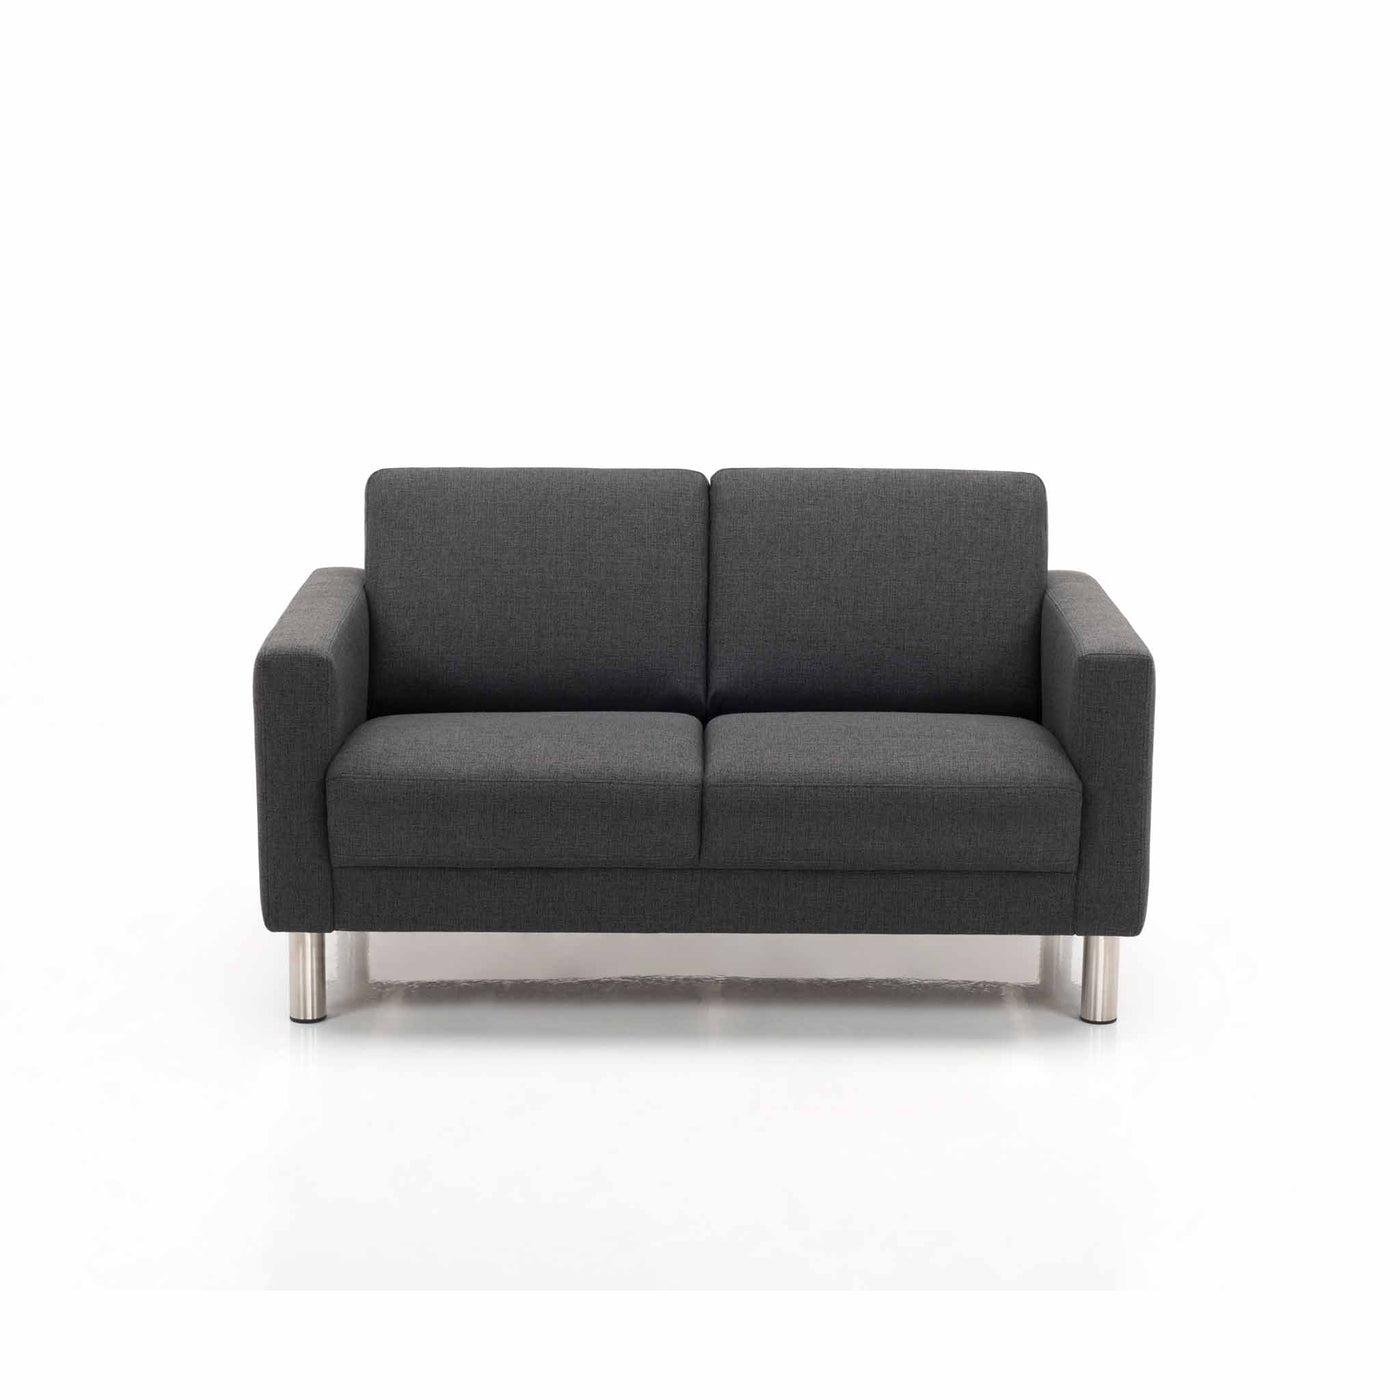 City 2-personers sofa i mørkegrå stof med stålben fra Hjort Knudsen